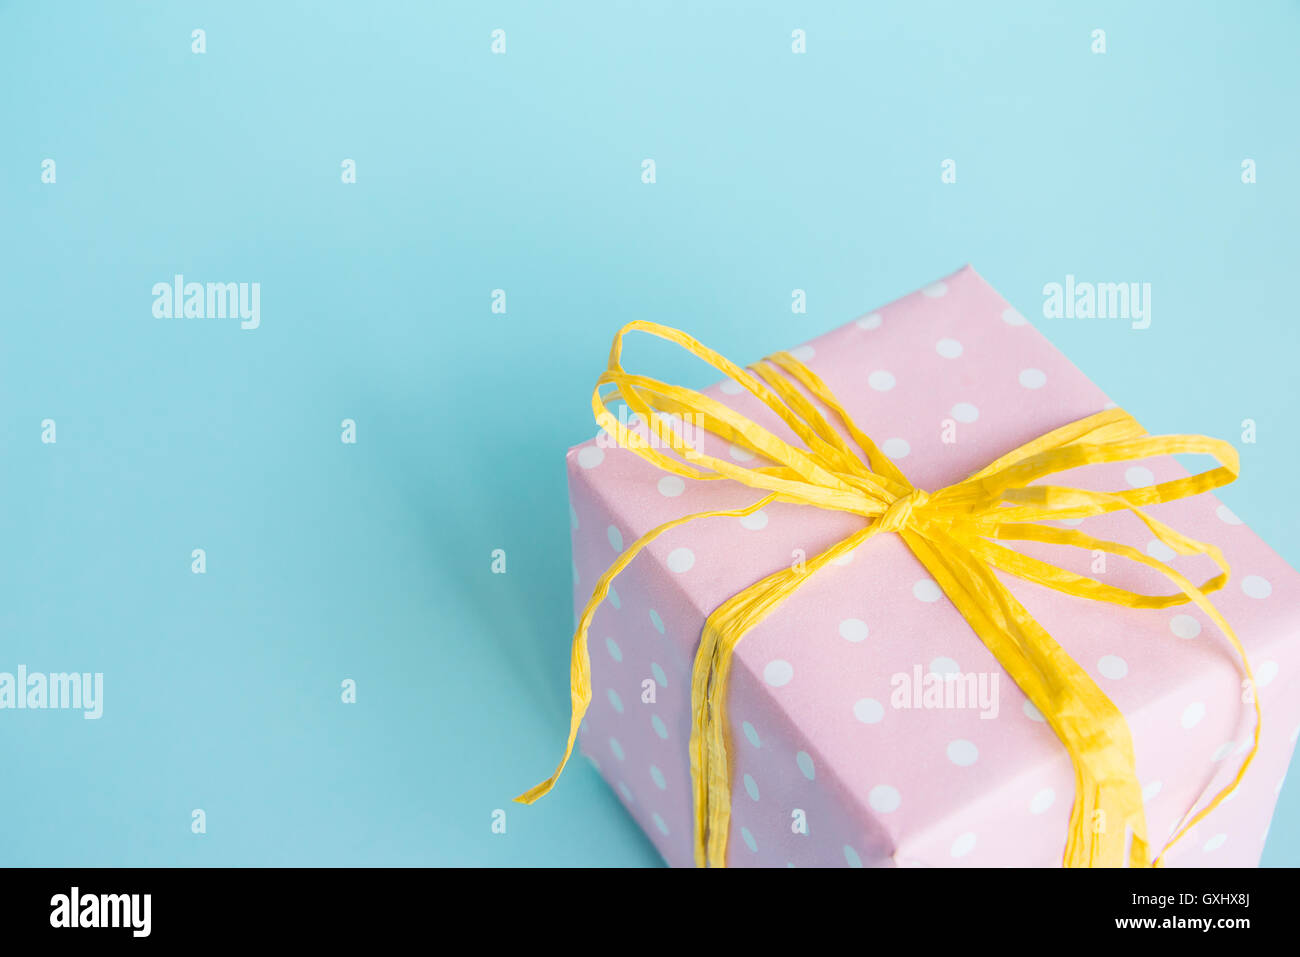 Vue de dessus d'une boîte-cadeau enveloppé dans du papier à points rose et jaune attaché sur bow fond bleu clair. Banque D'Images